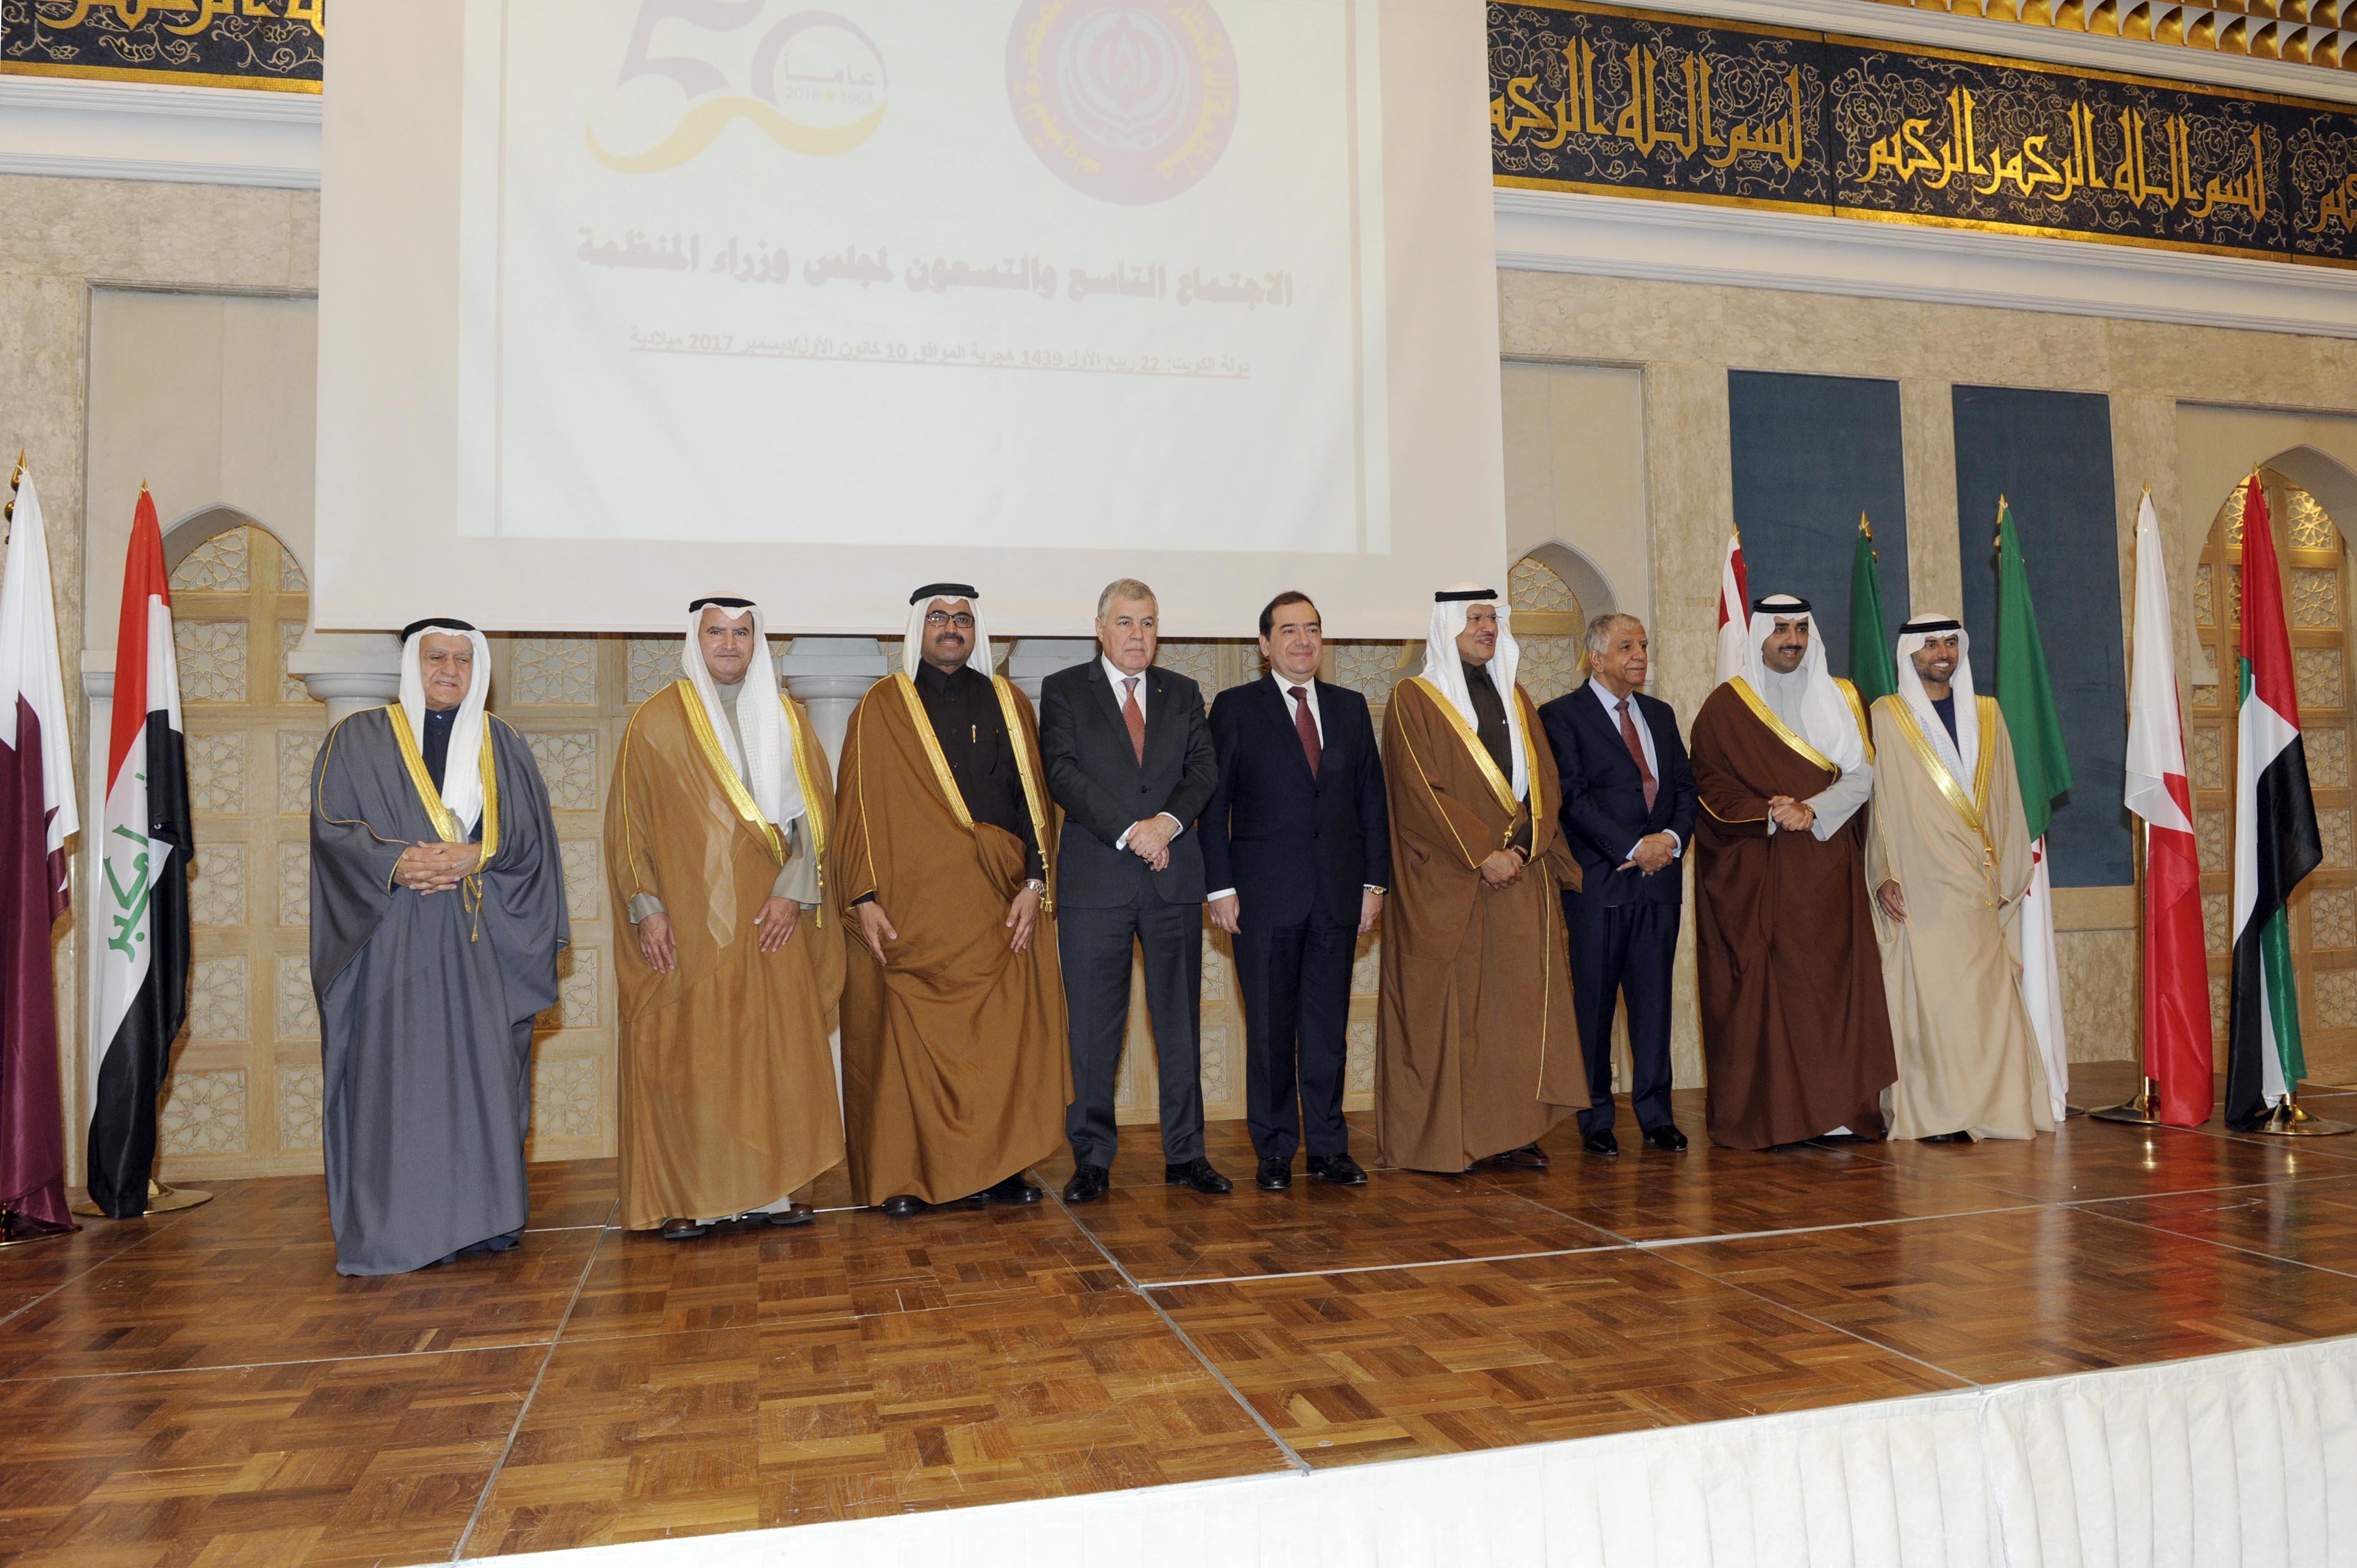 وزراء منظمة الأقطار العربية المصدرة للبترول (أوابك) في لقطة جماعية أثناء انطلاق فعاليات الاجتماع التاسع والتسعين لمجلس وزراء المنظمة